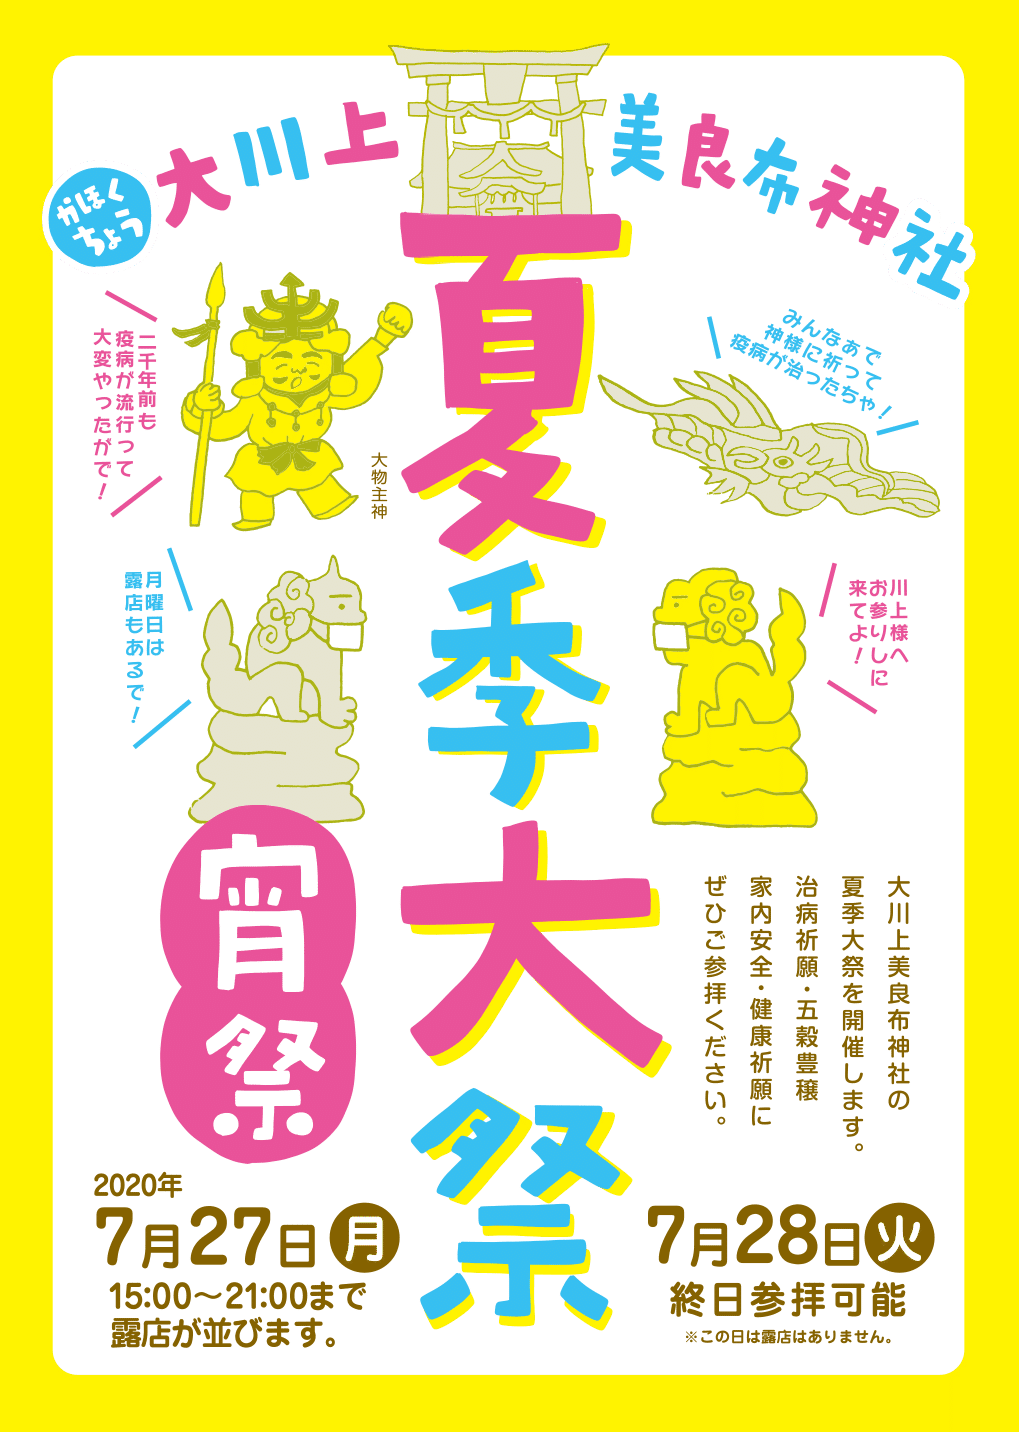 大川上美良布神社の夏祭りチラシ デザインはち いわかみちなつ Note